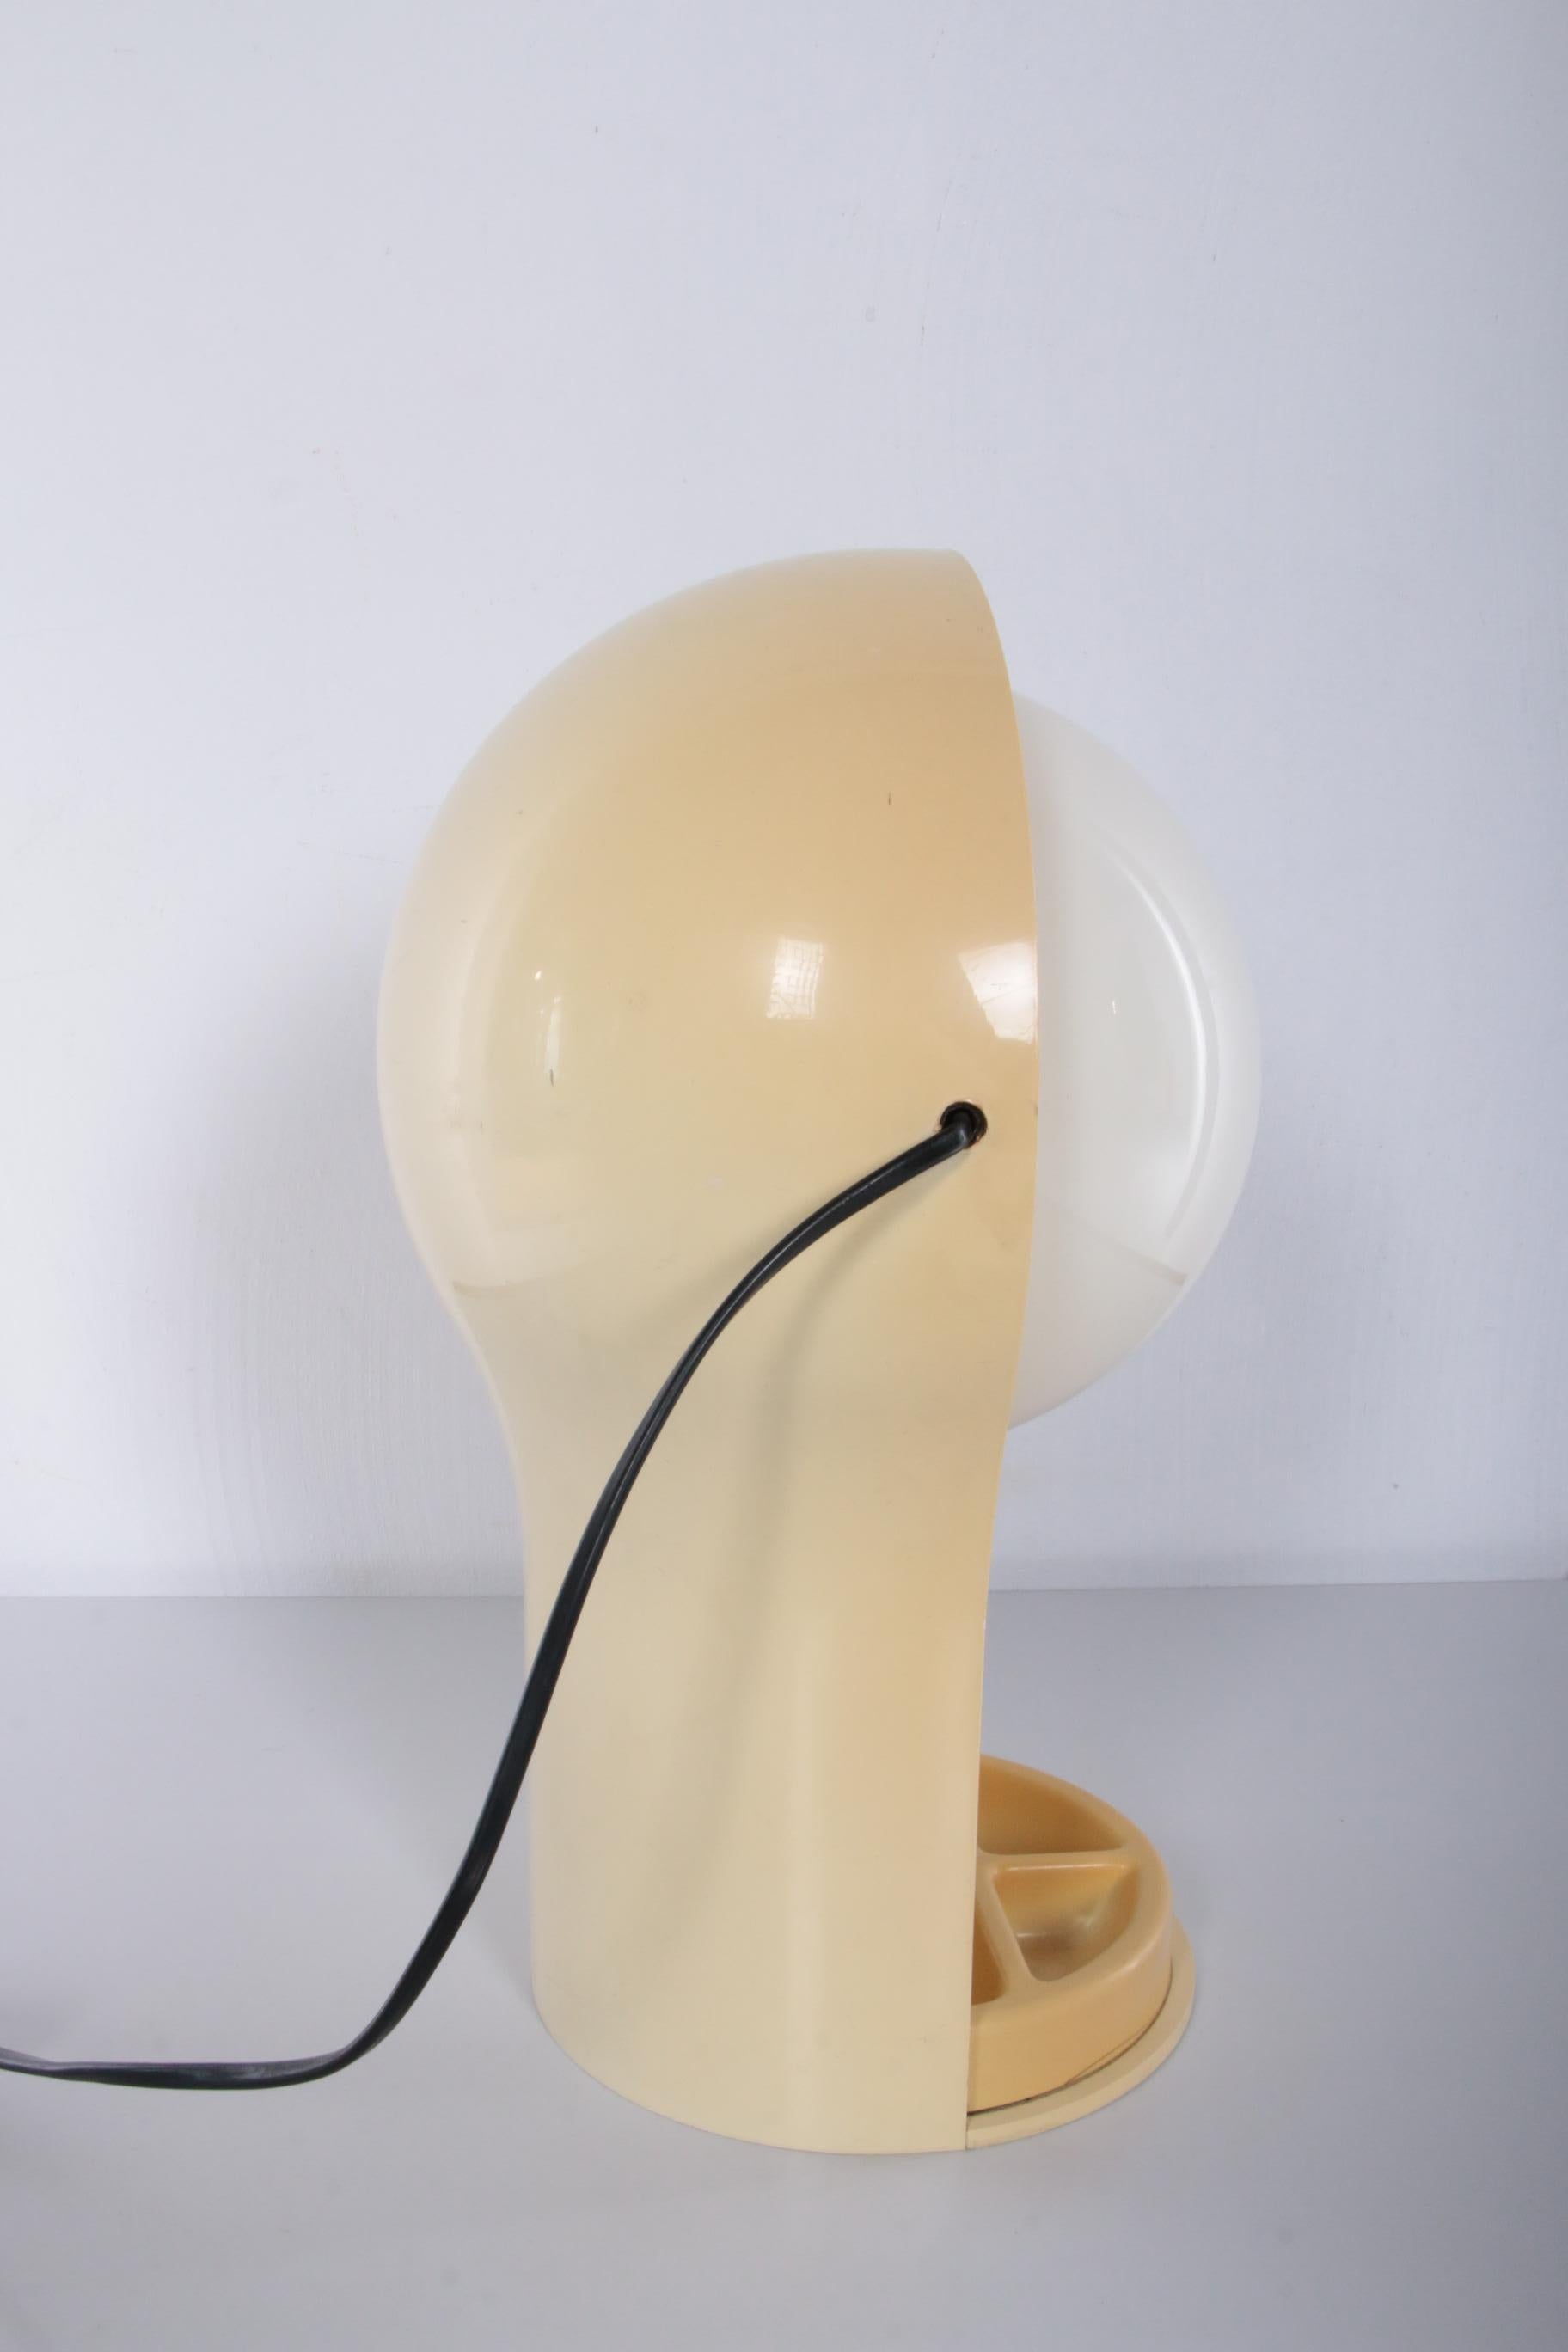 Vico Magistretti Desk Lamp Model Telegono Made by Artemide, 1960s Italy 2